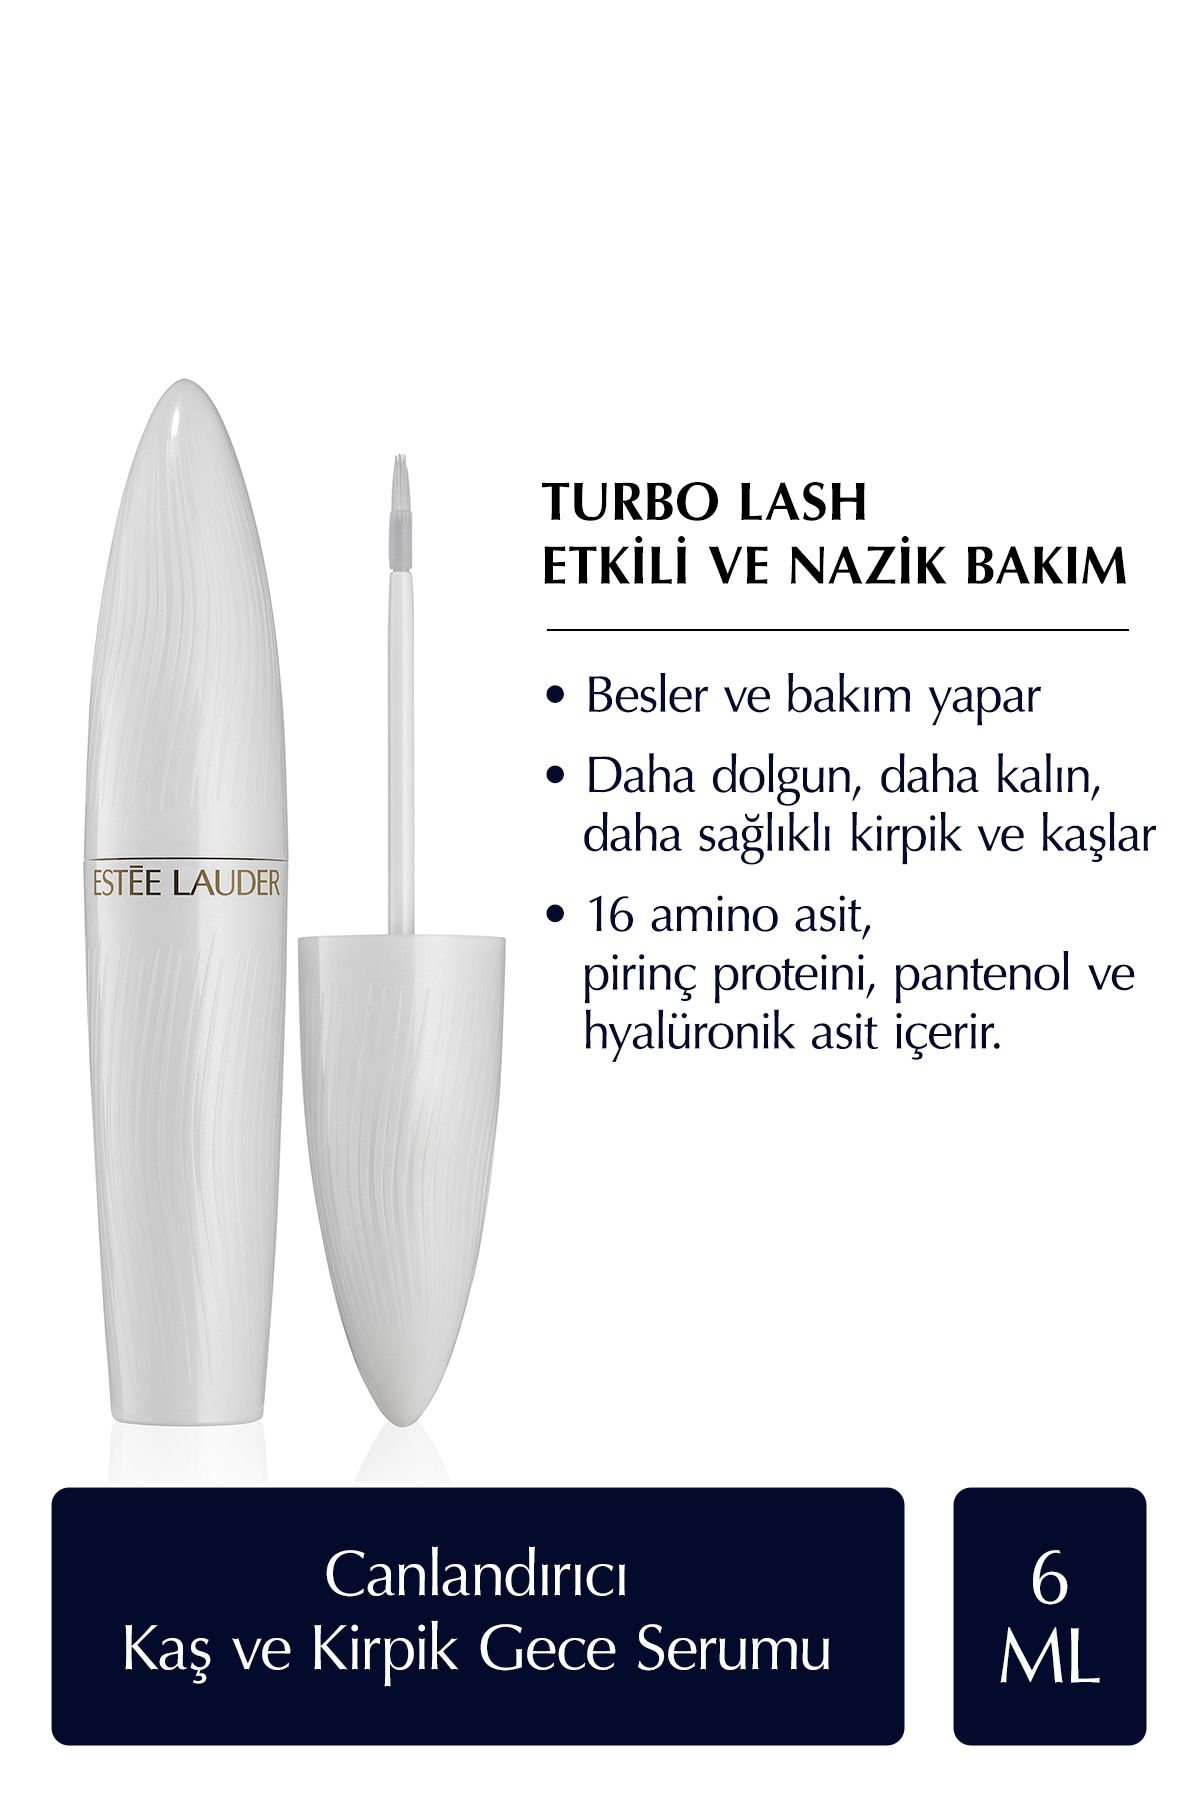 Estee Lauder Turbo Lash Canlandırıcı, Güçlendirici ve Besleyici Kaş ve Kirpik Gece Serumu - 6ml DKÜRN835